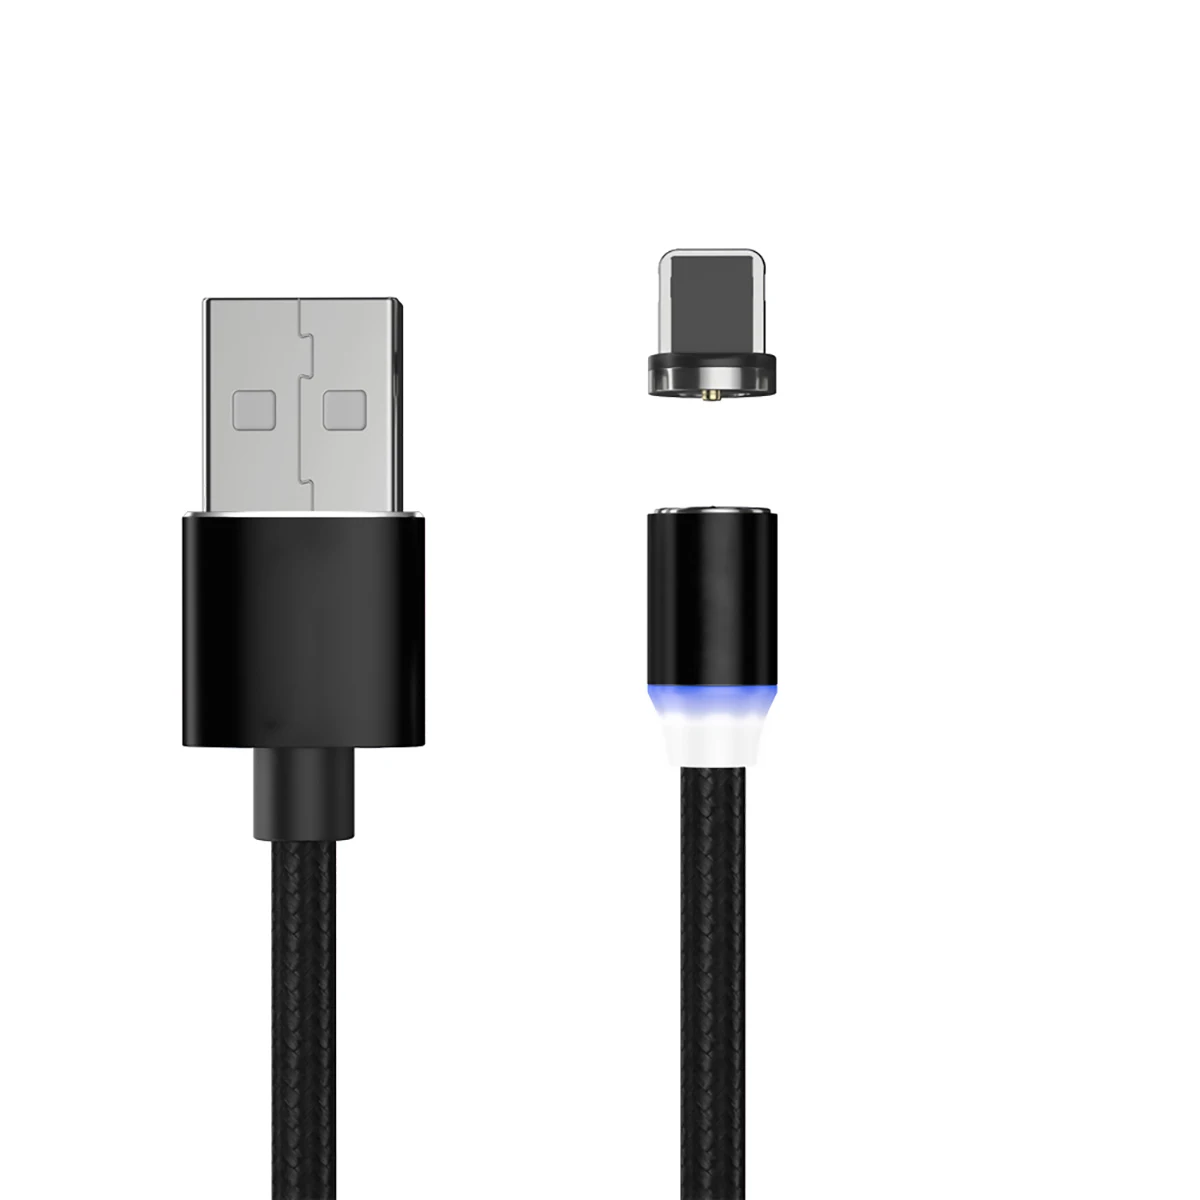 Магнитный Micro USB кабель для iPhone samsung Android мобильный телефон Быстрая зарядка usb type C кабель магнит зарядное устройство провод шнур - Цвет: Black IOS